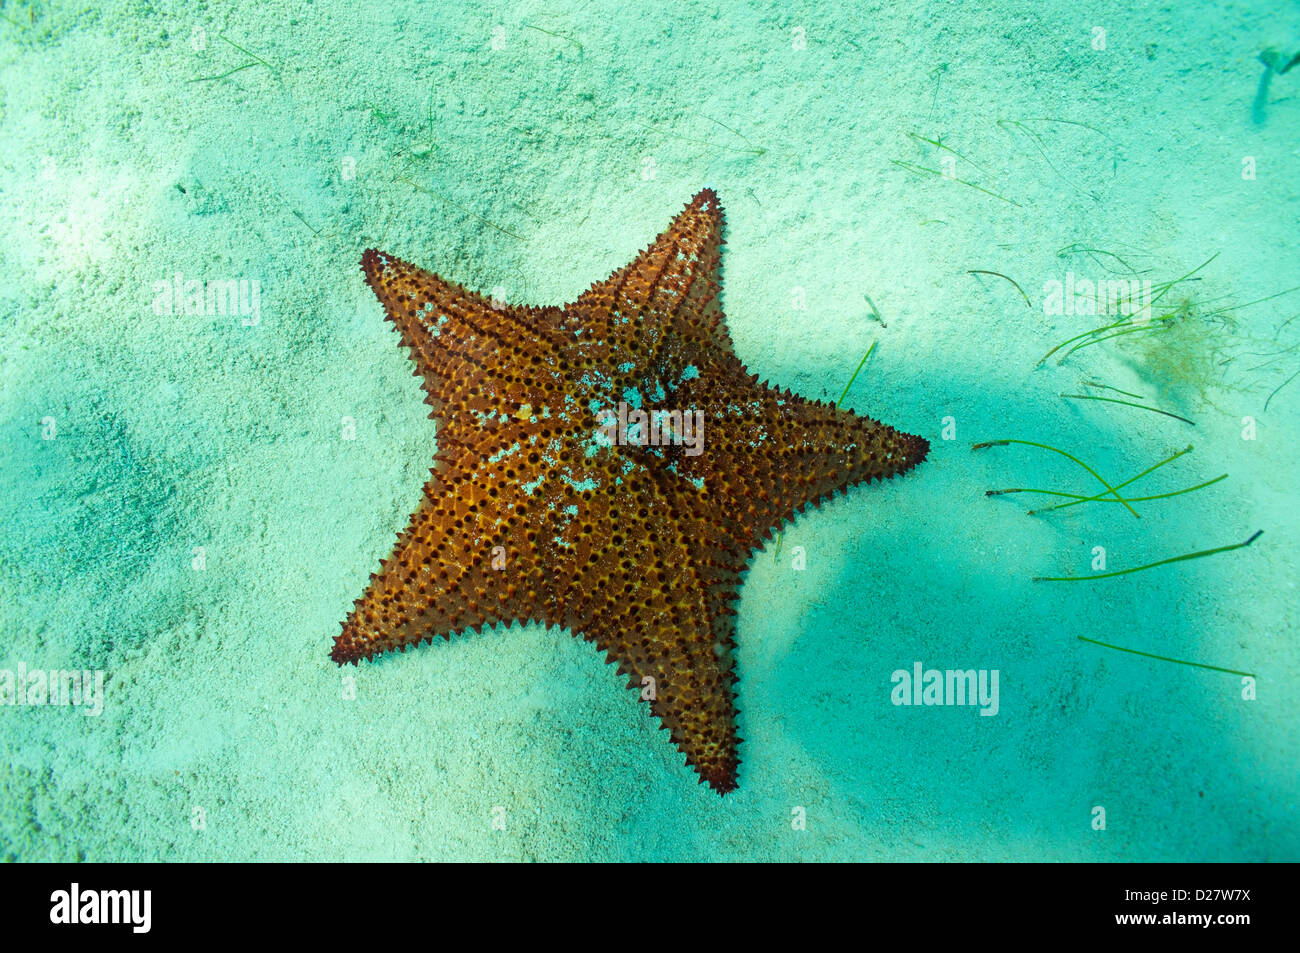 Starfish underwater, Bayahibe, Dominican Republic Stock Photo